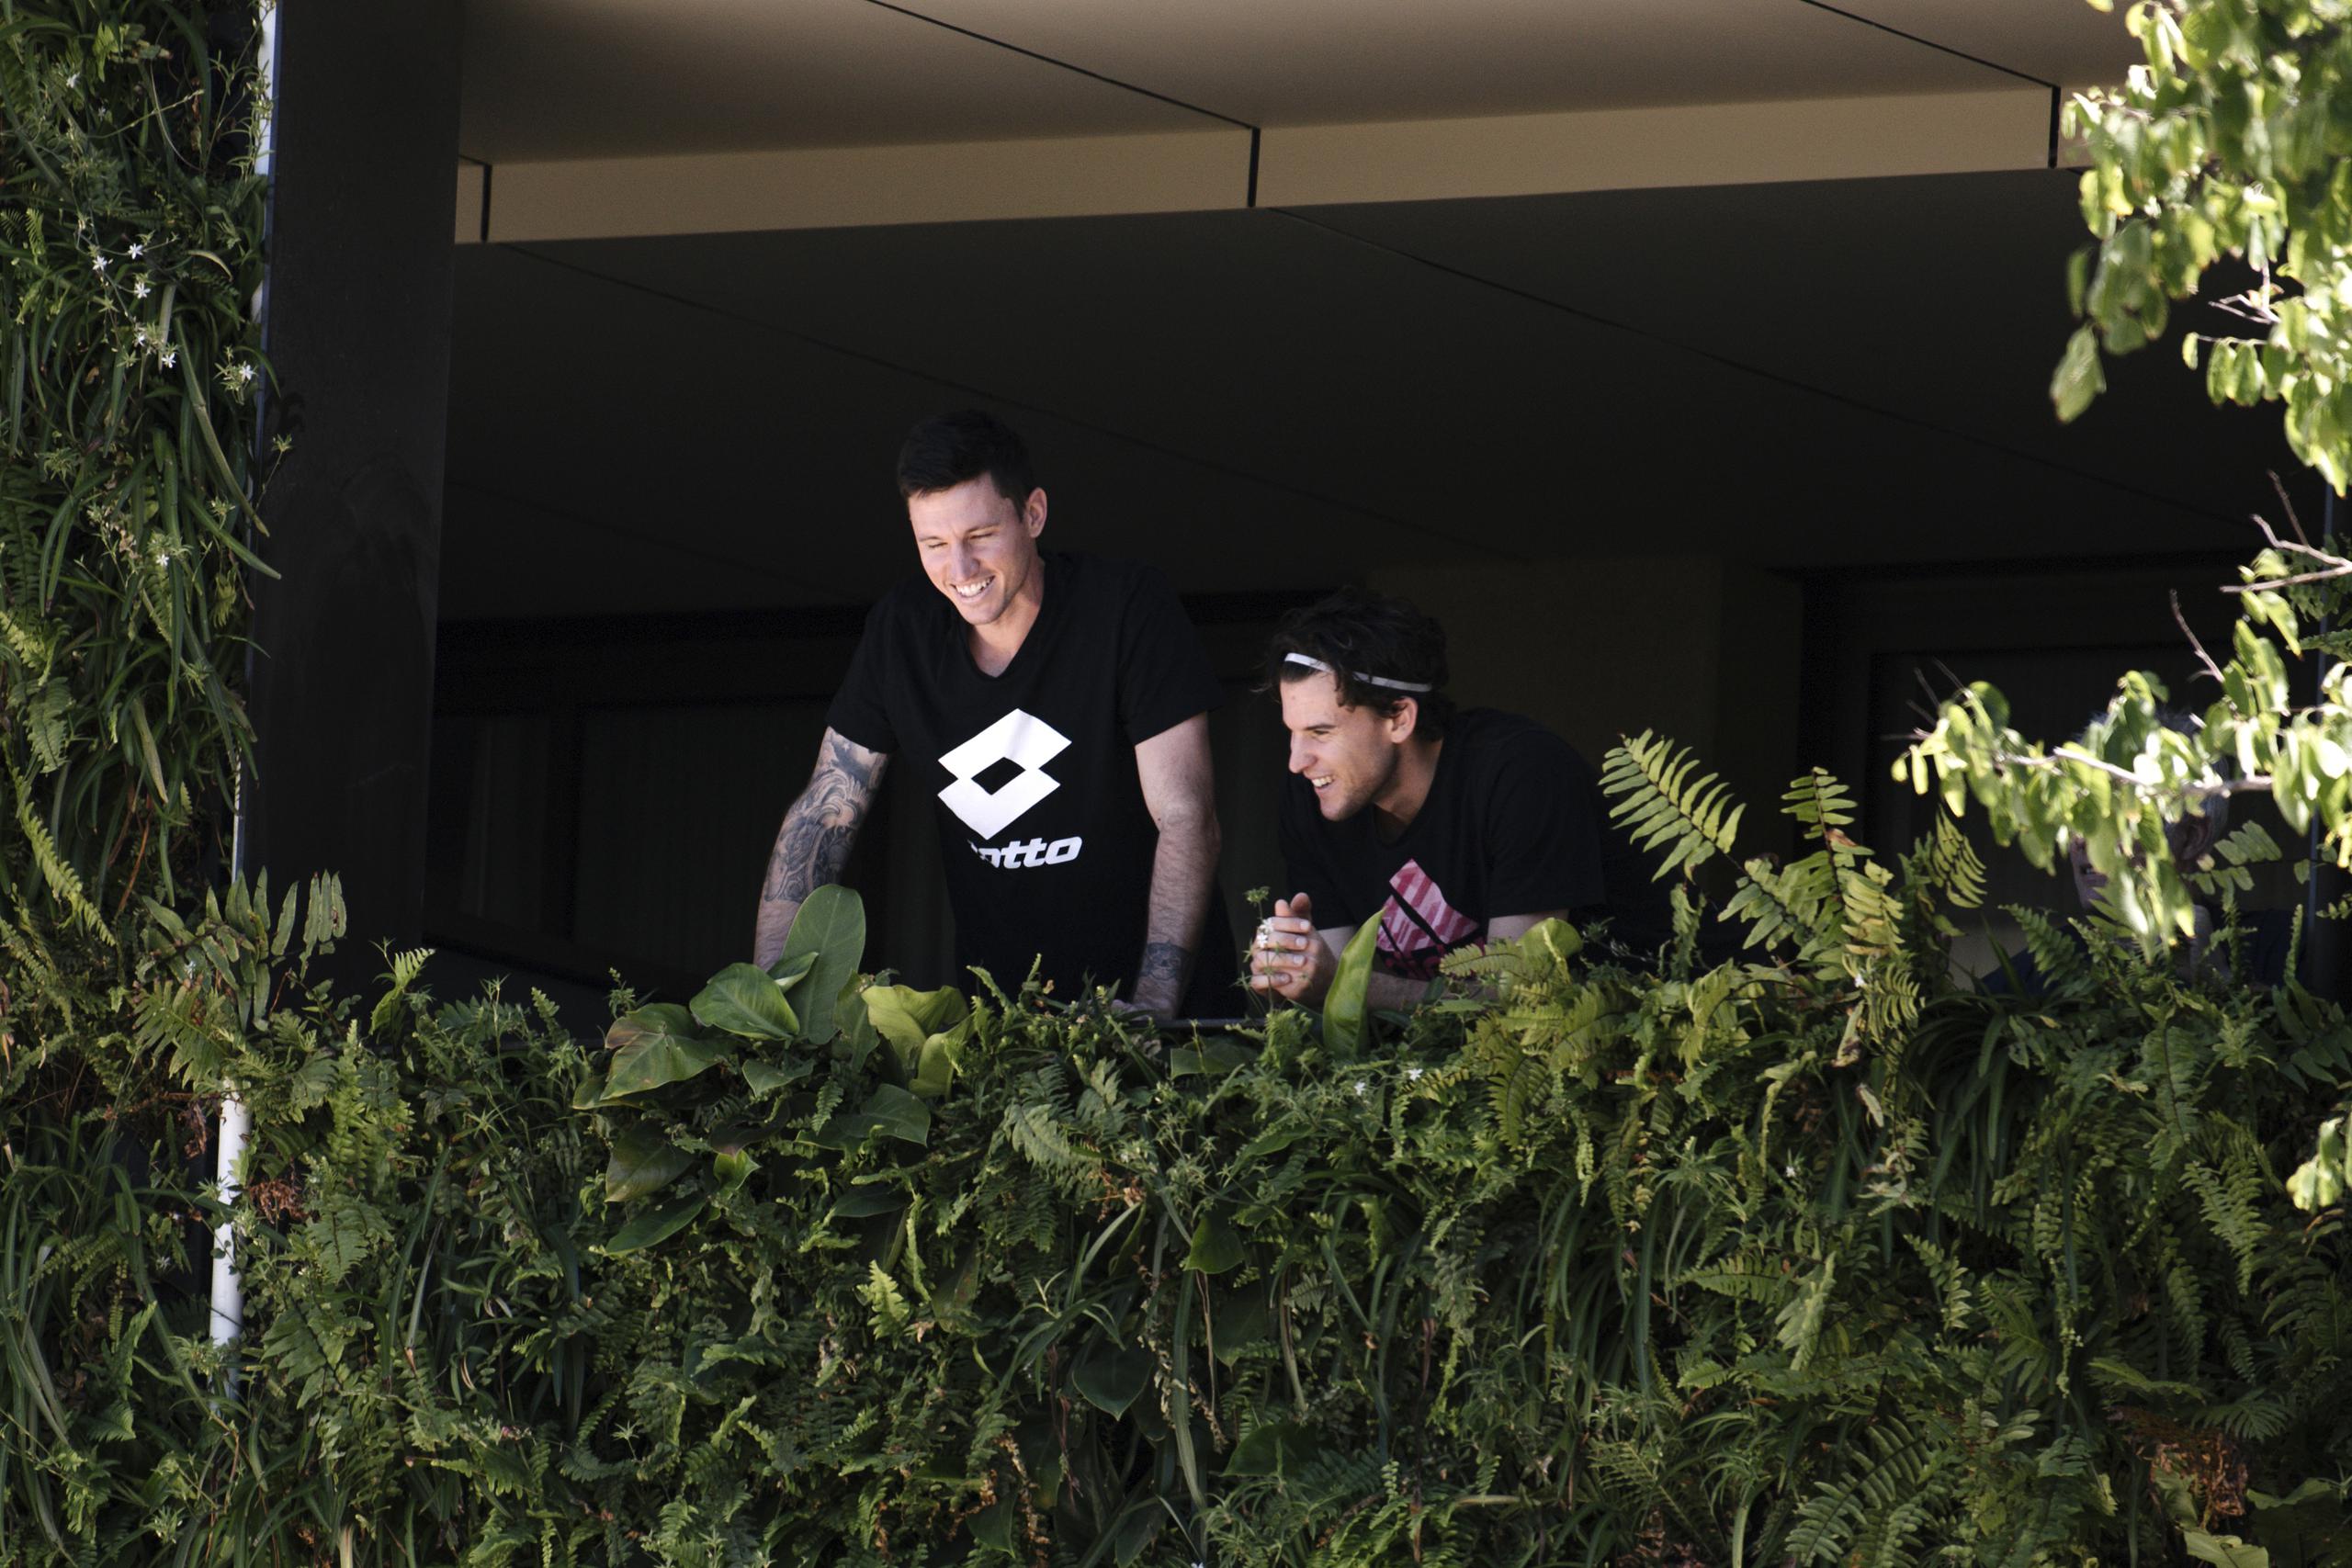 El tenista local australiano Dominic Thiem (derecha), aparece acompañado por un hombre no identificado en el balcón de su residencia en Adelaida, Australia, el martes 19 de enero de 2021.